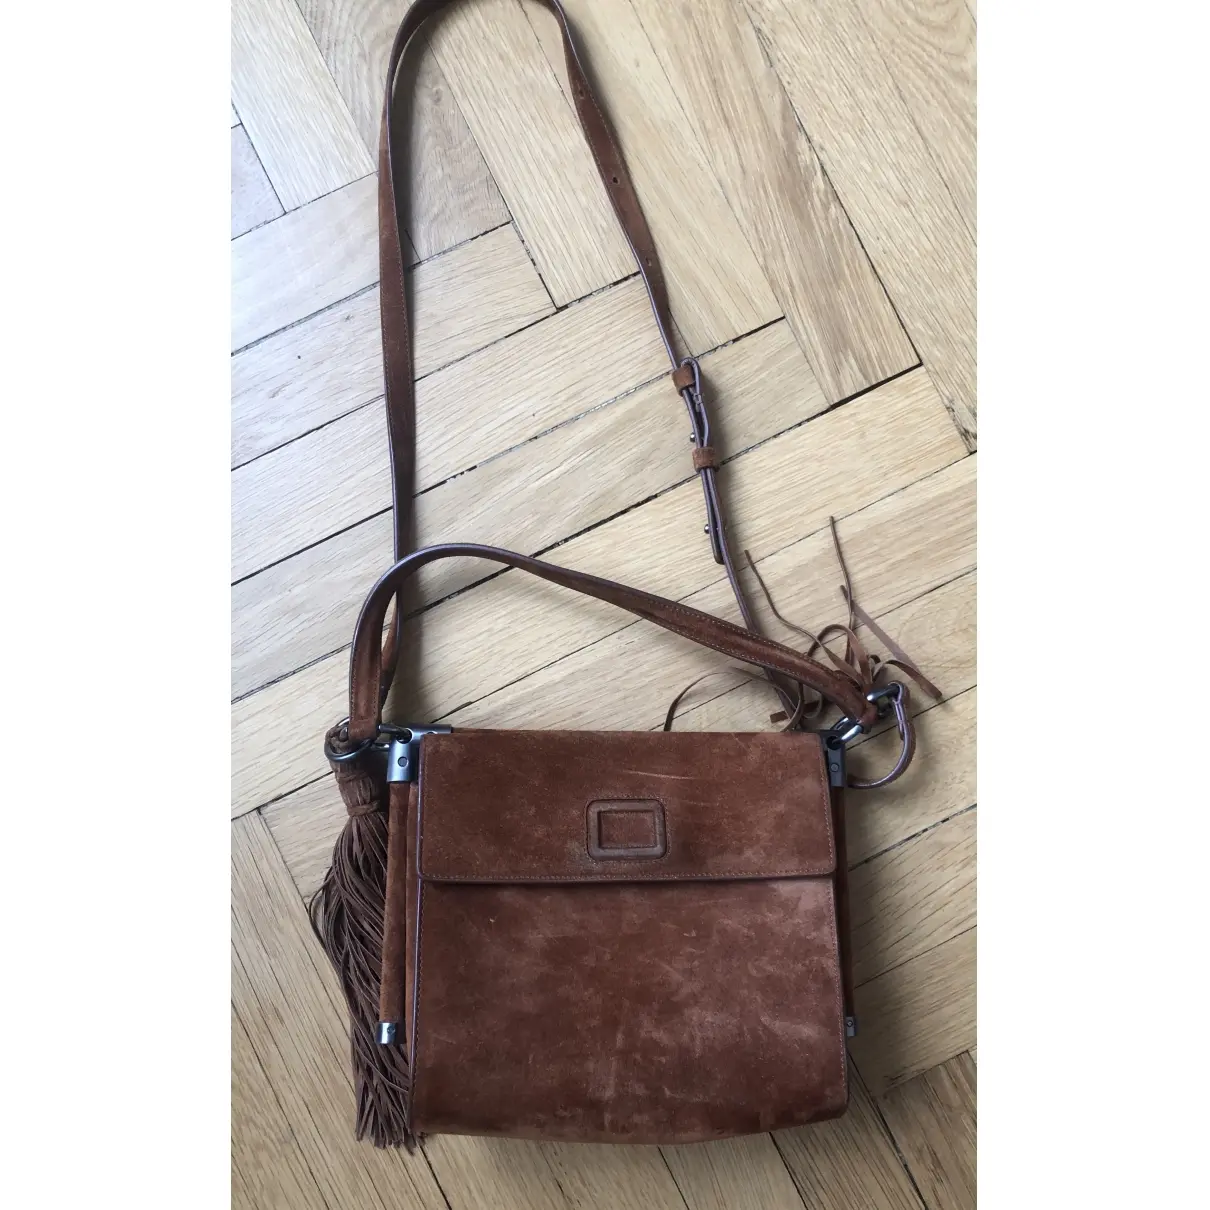 Roger Vivier Mini sac viv sellier handbag for sale